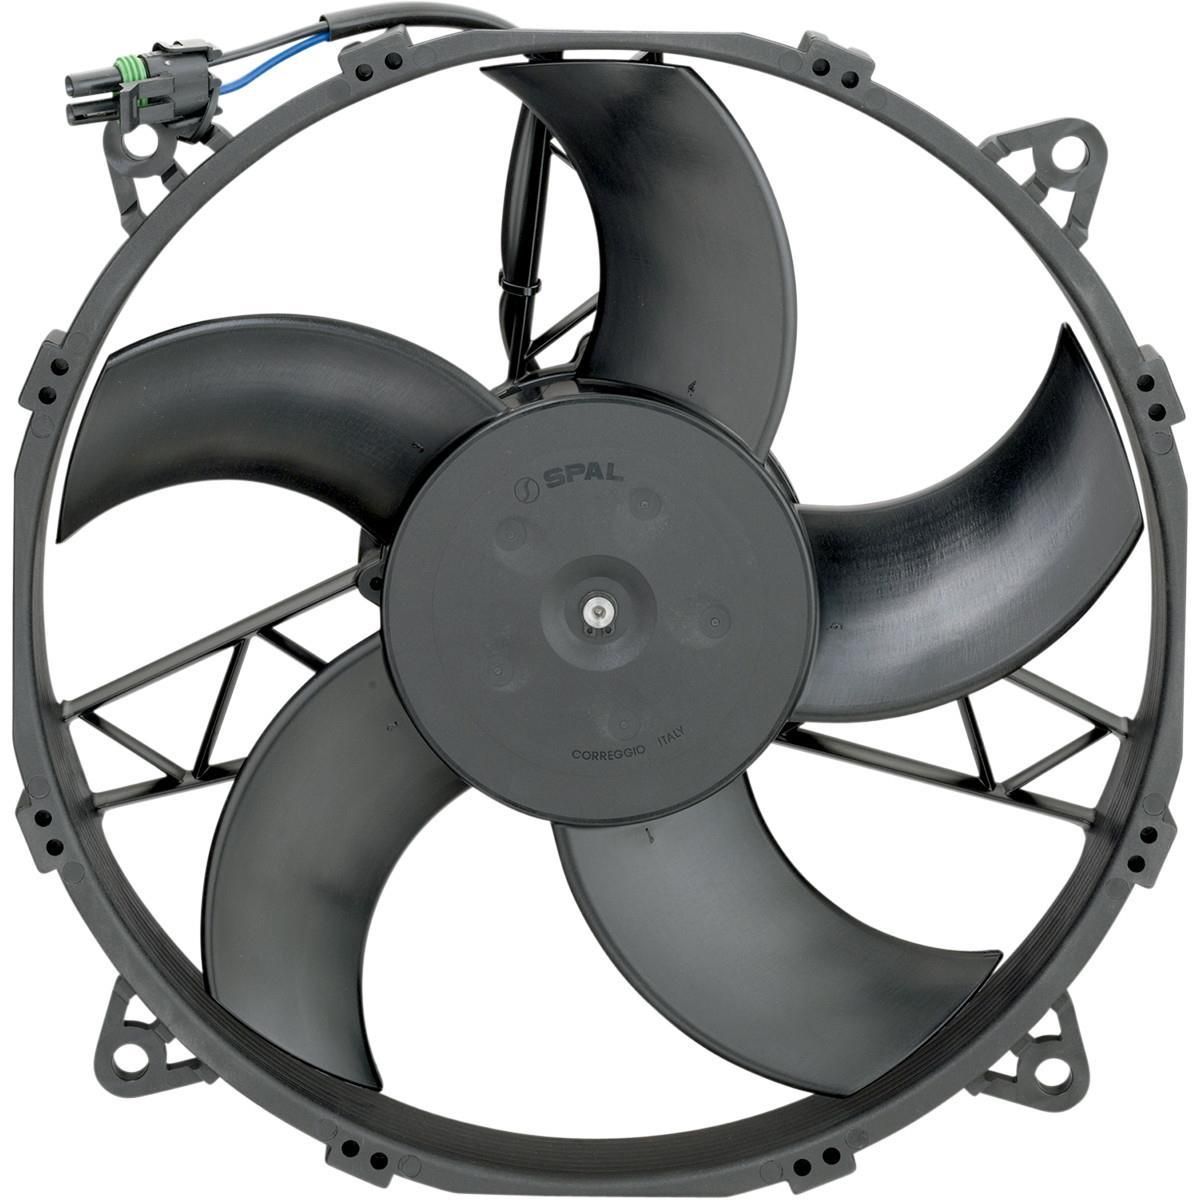 224F-MOOSE-UTILI-19010318 Hi-Performance Cooling Fan